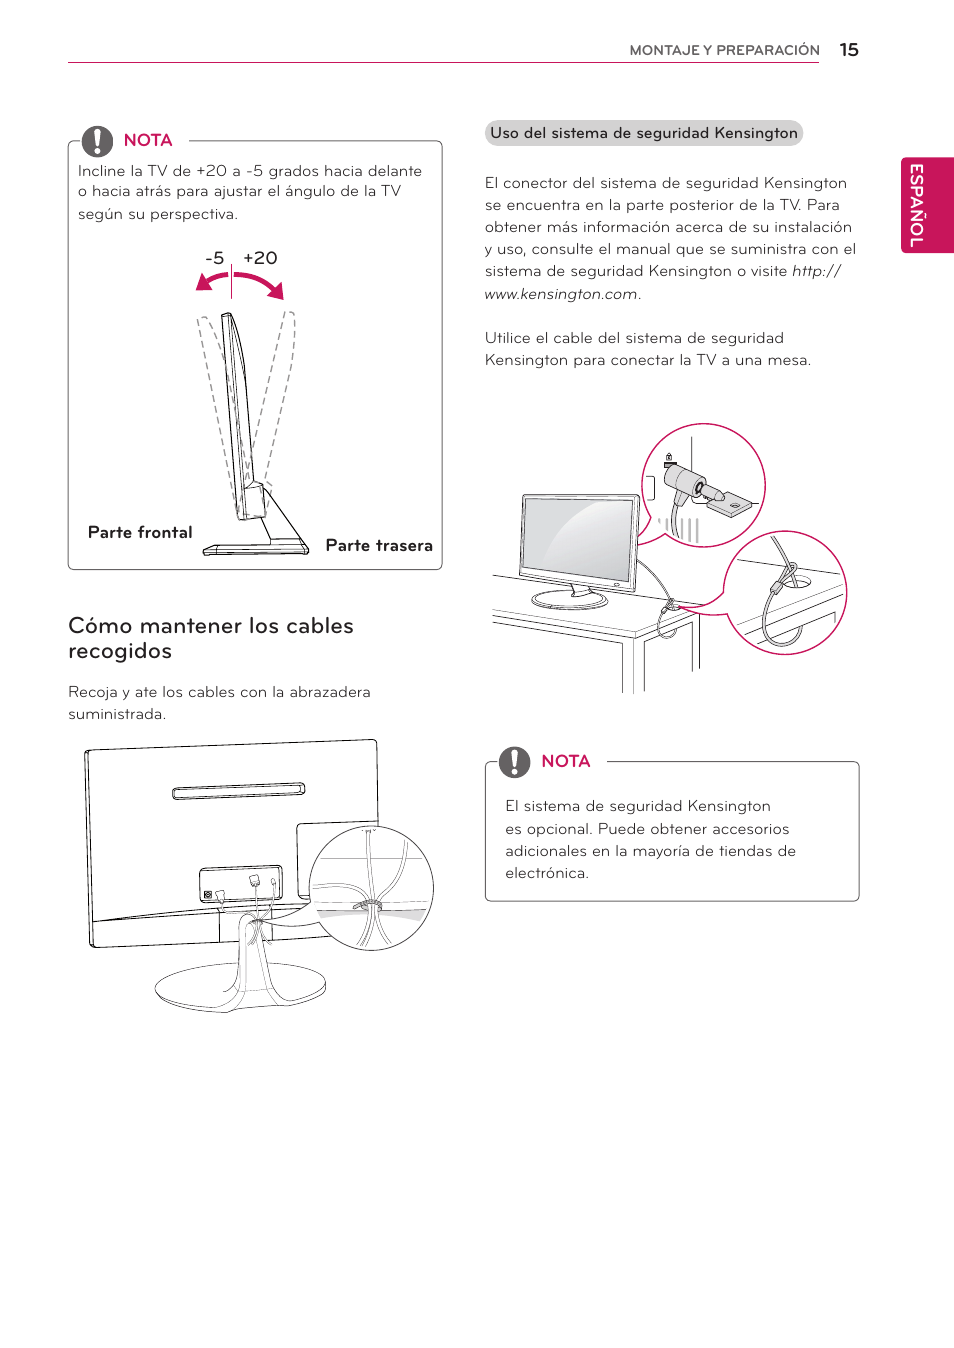 Cómo mantener los cables recogidos | LG 24MS53S-PZ Manual del usuario | Página 15 / 46